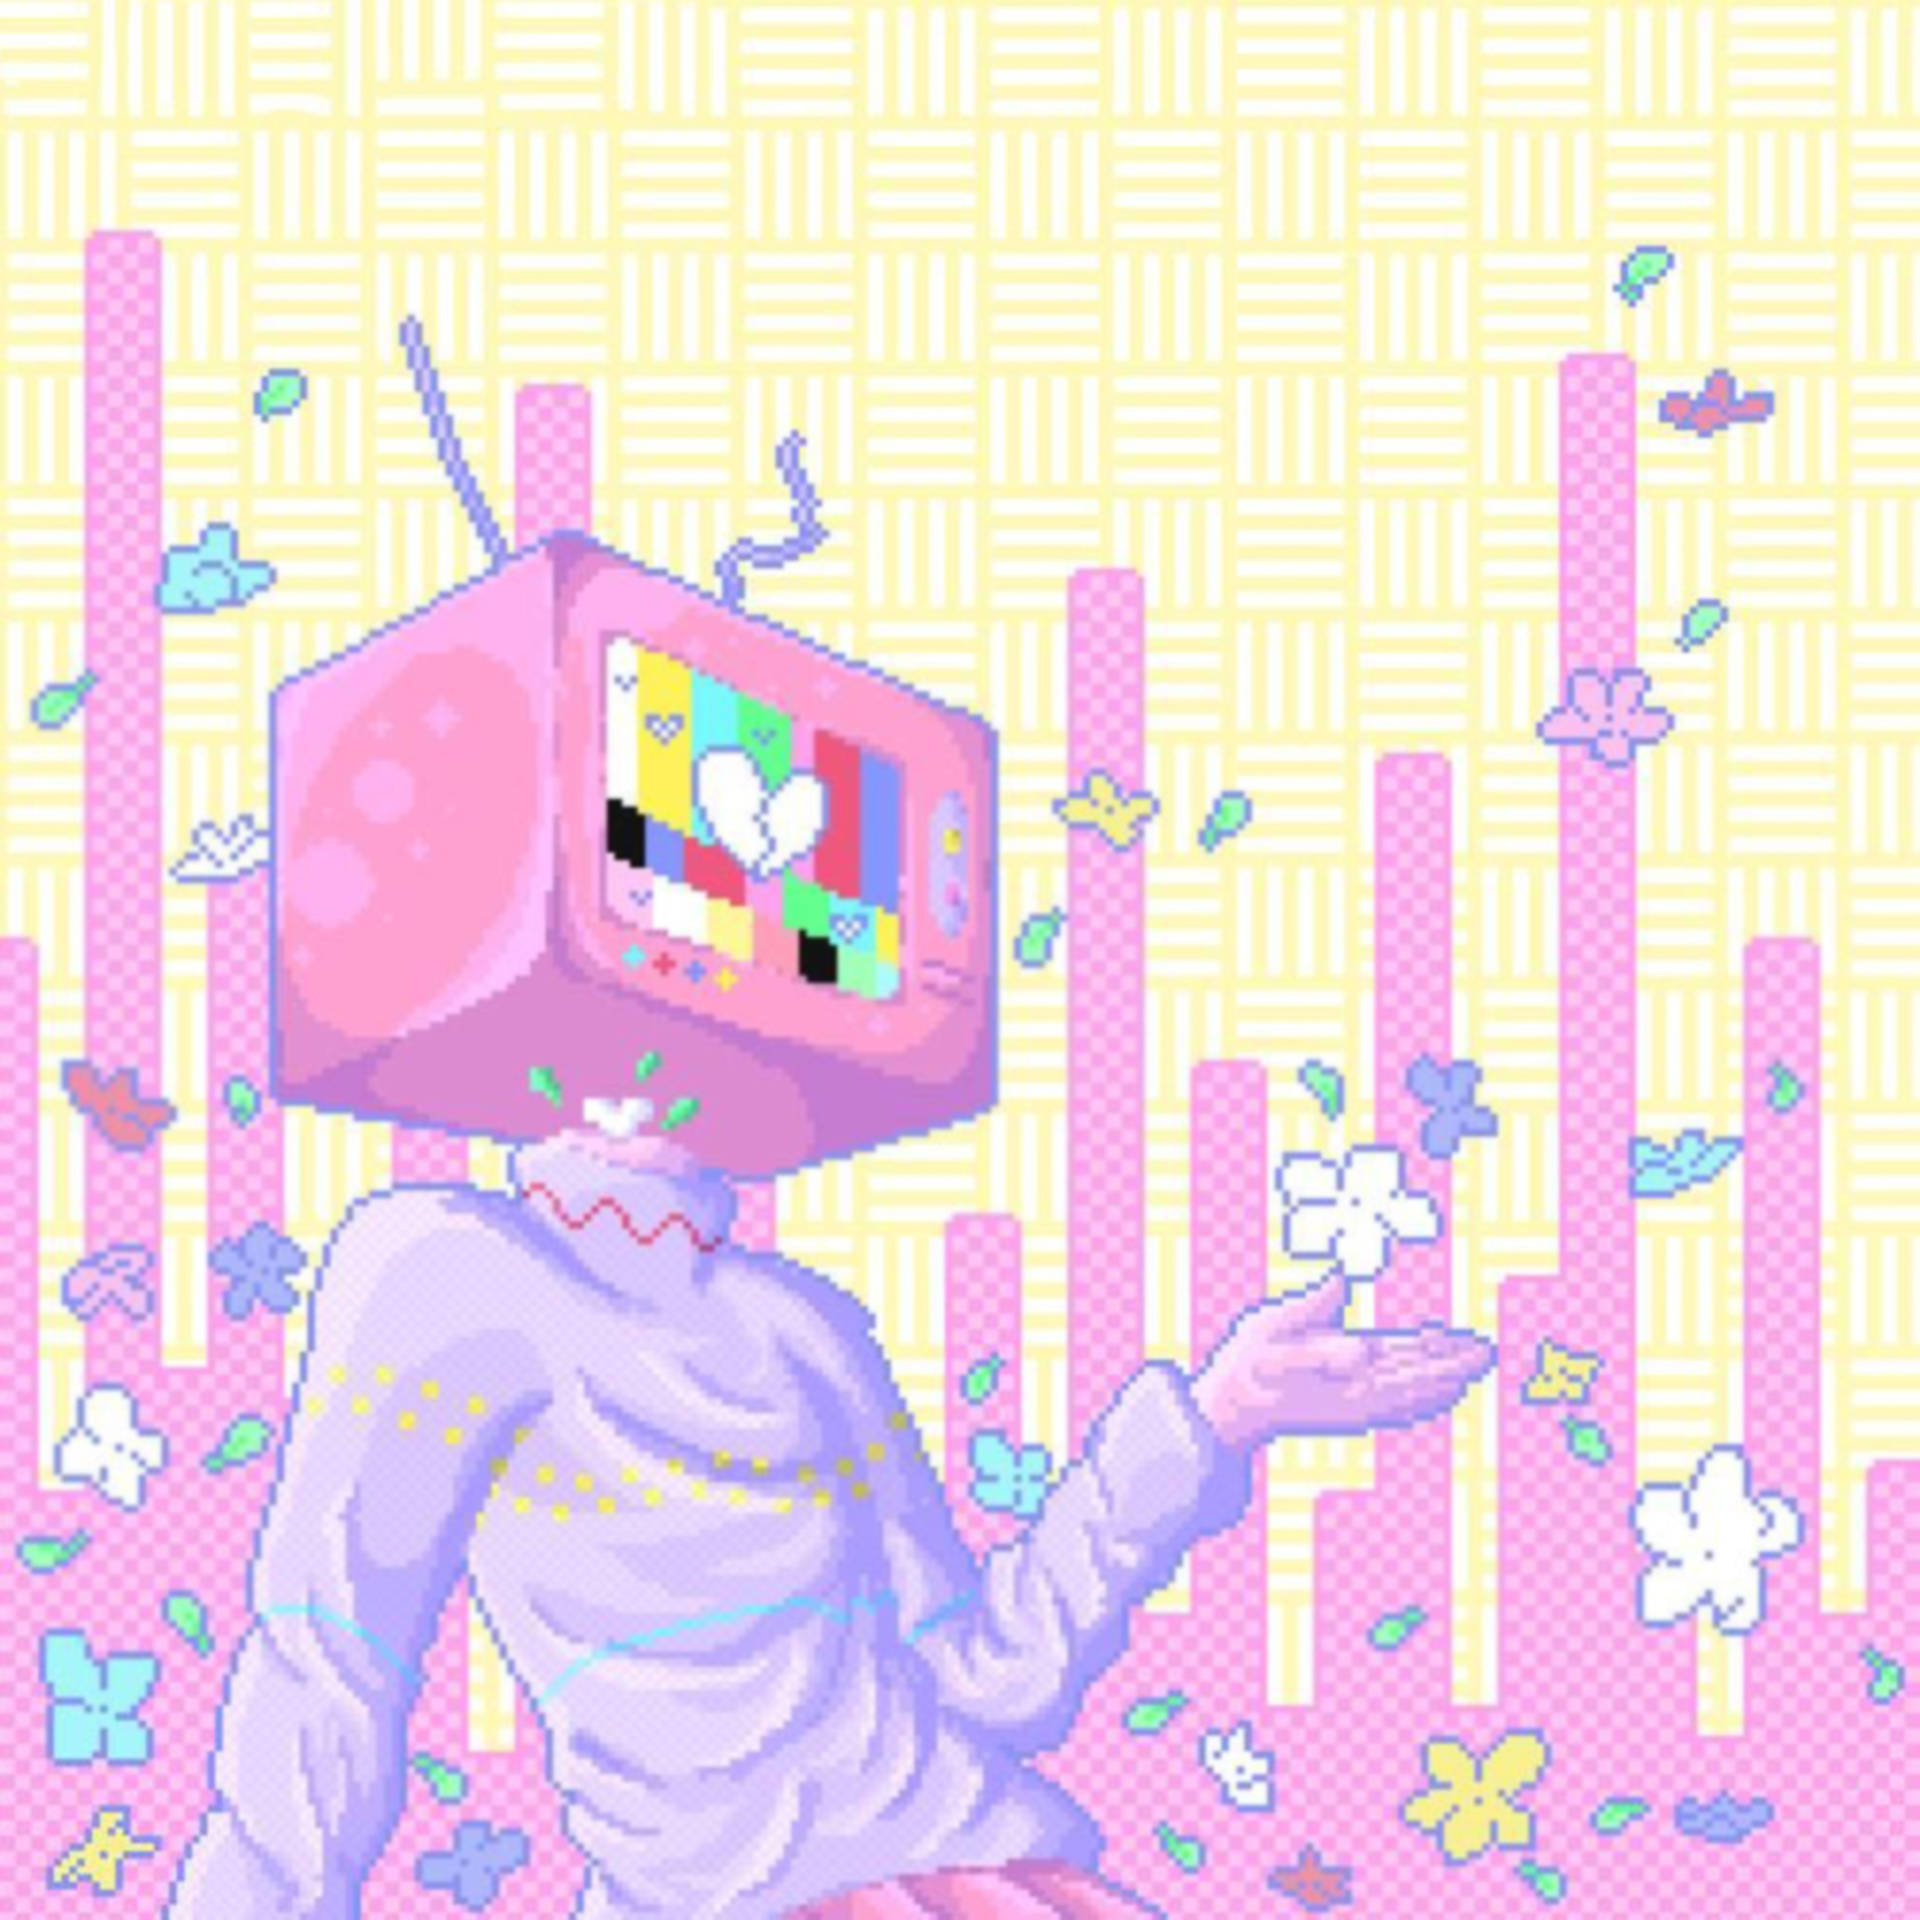 Pixelated TV Head Wallpaper